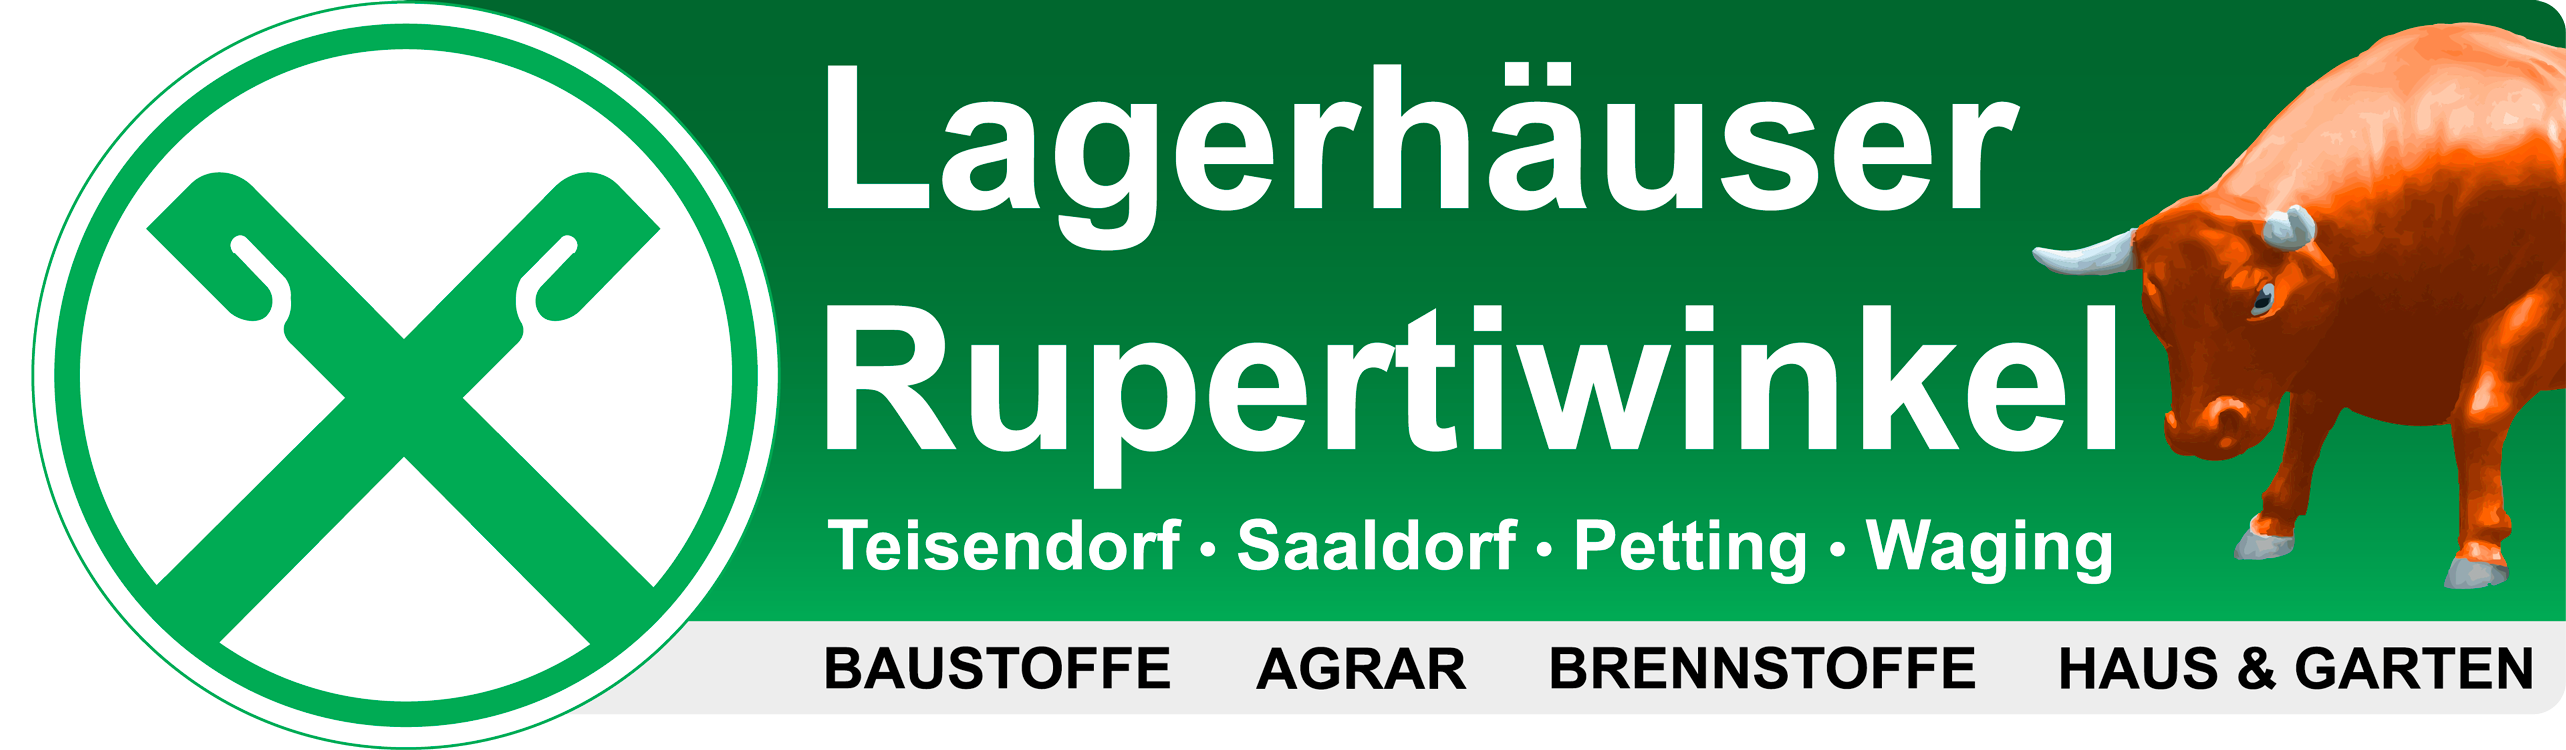 Raiffeisen-Lagerhäuser Rupertiwinkel Mustergarten, Logo